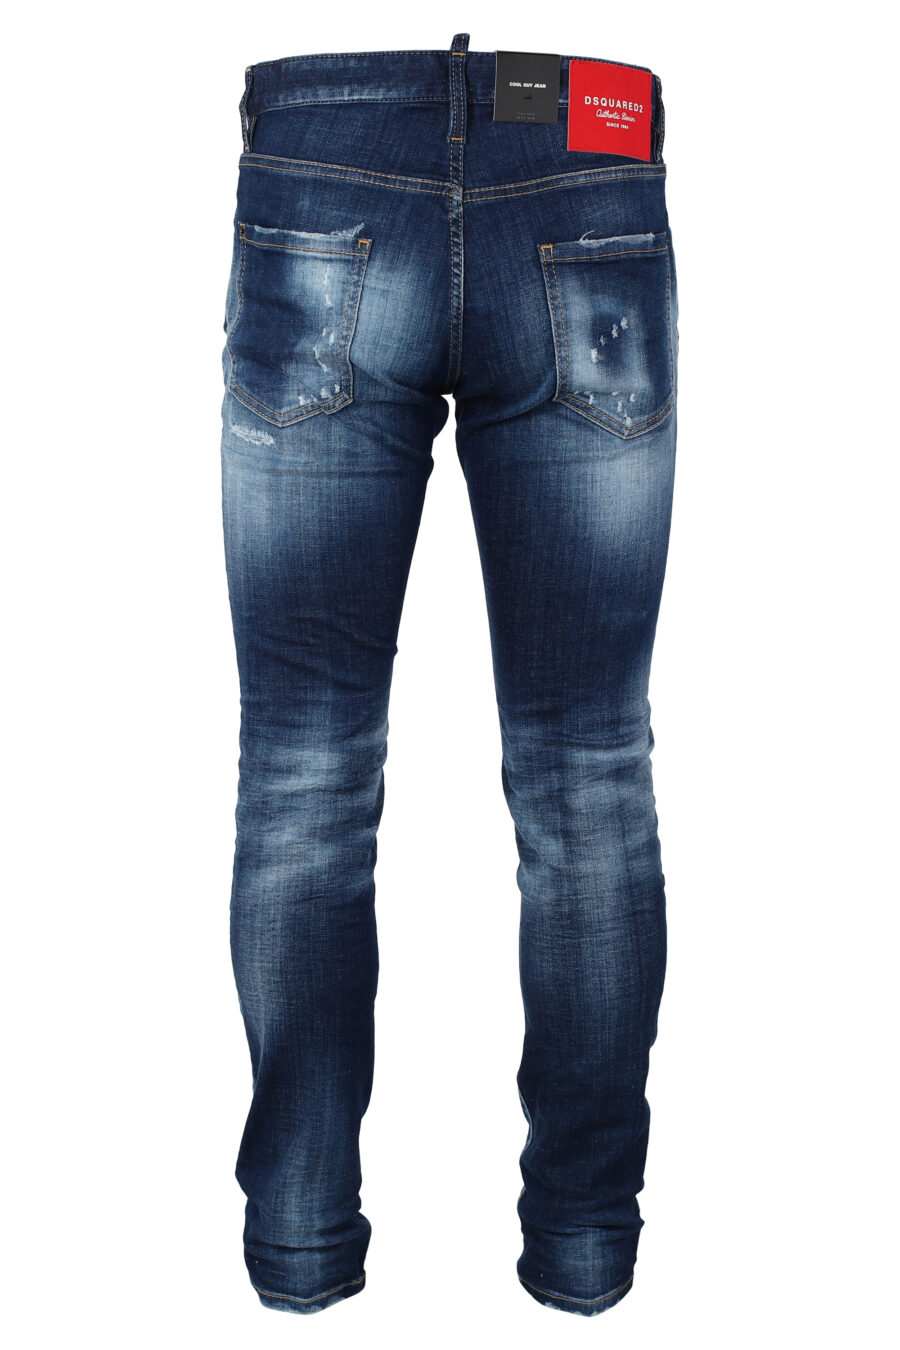 Jeans bleus portés "cool guy jean" - IMG 9875